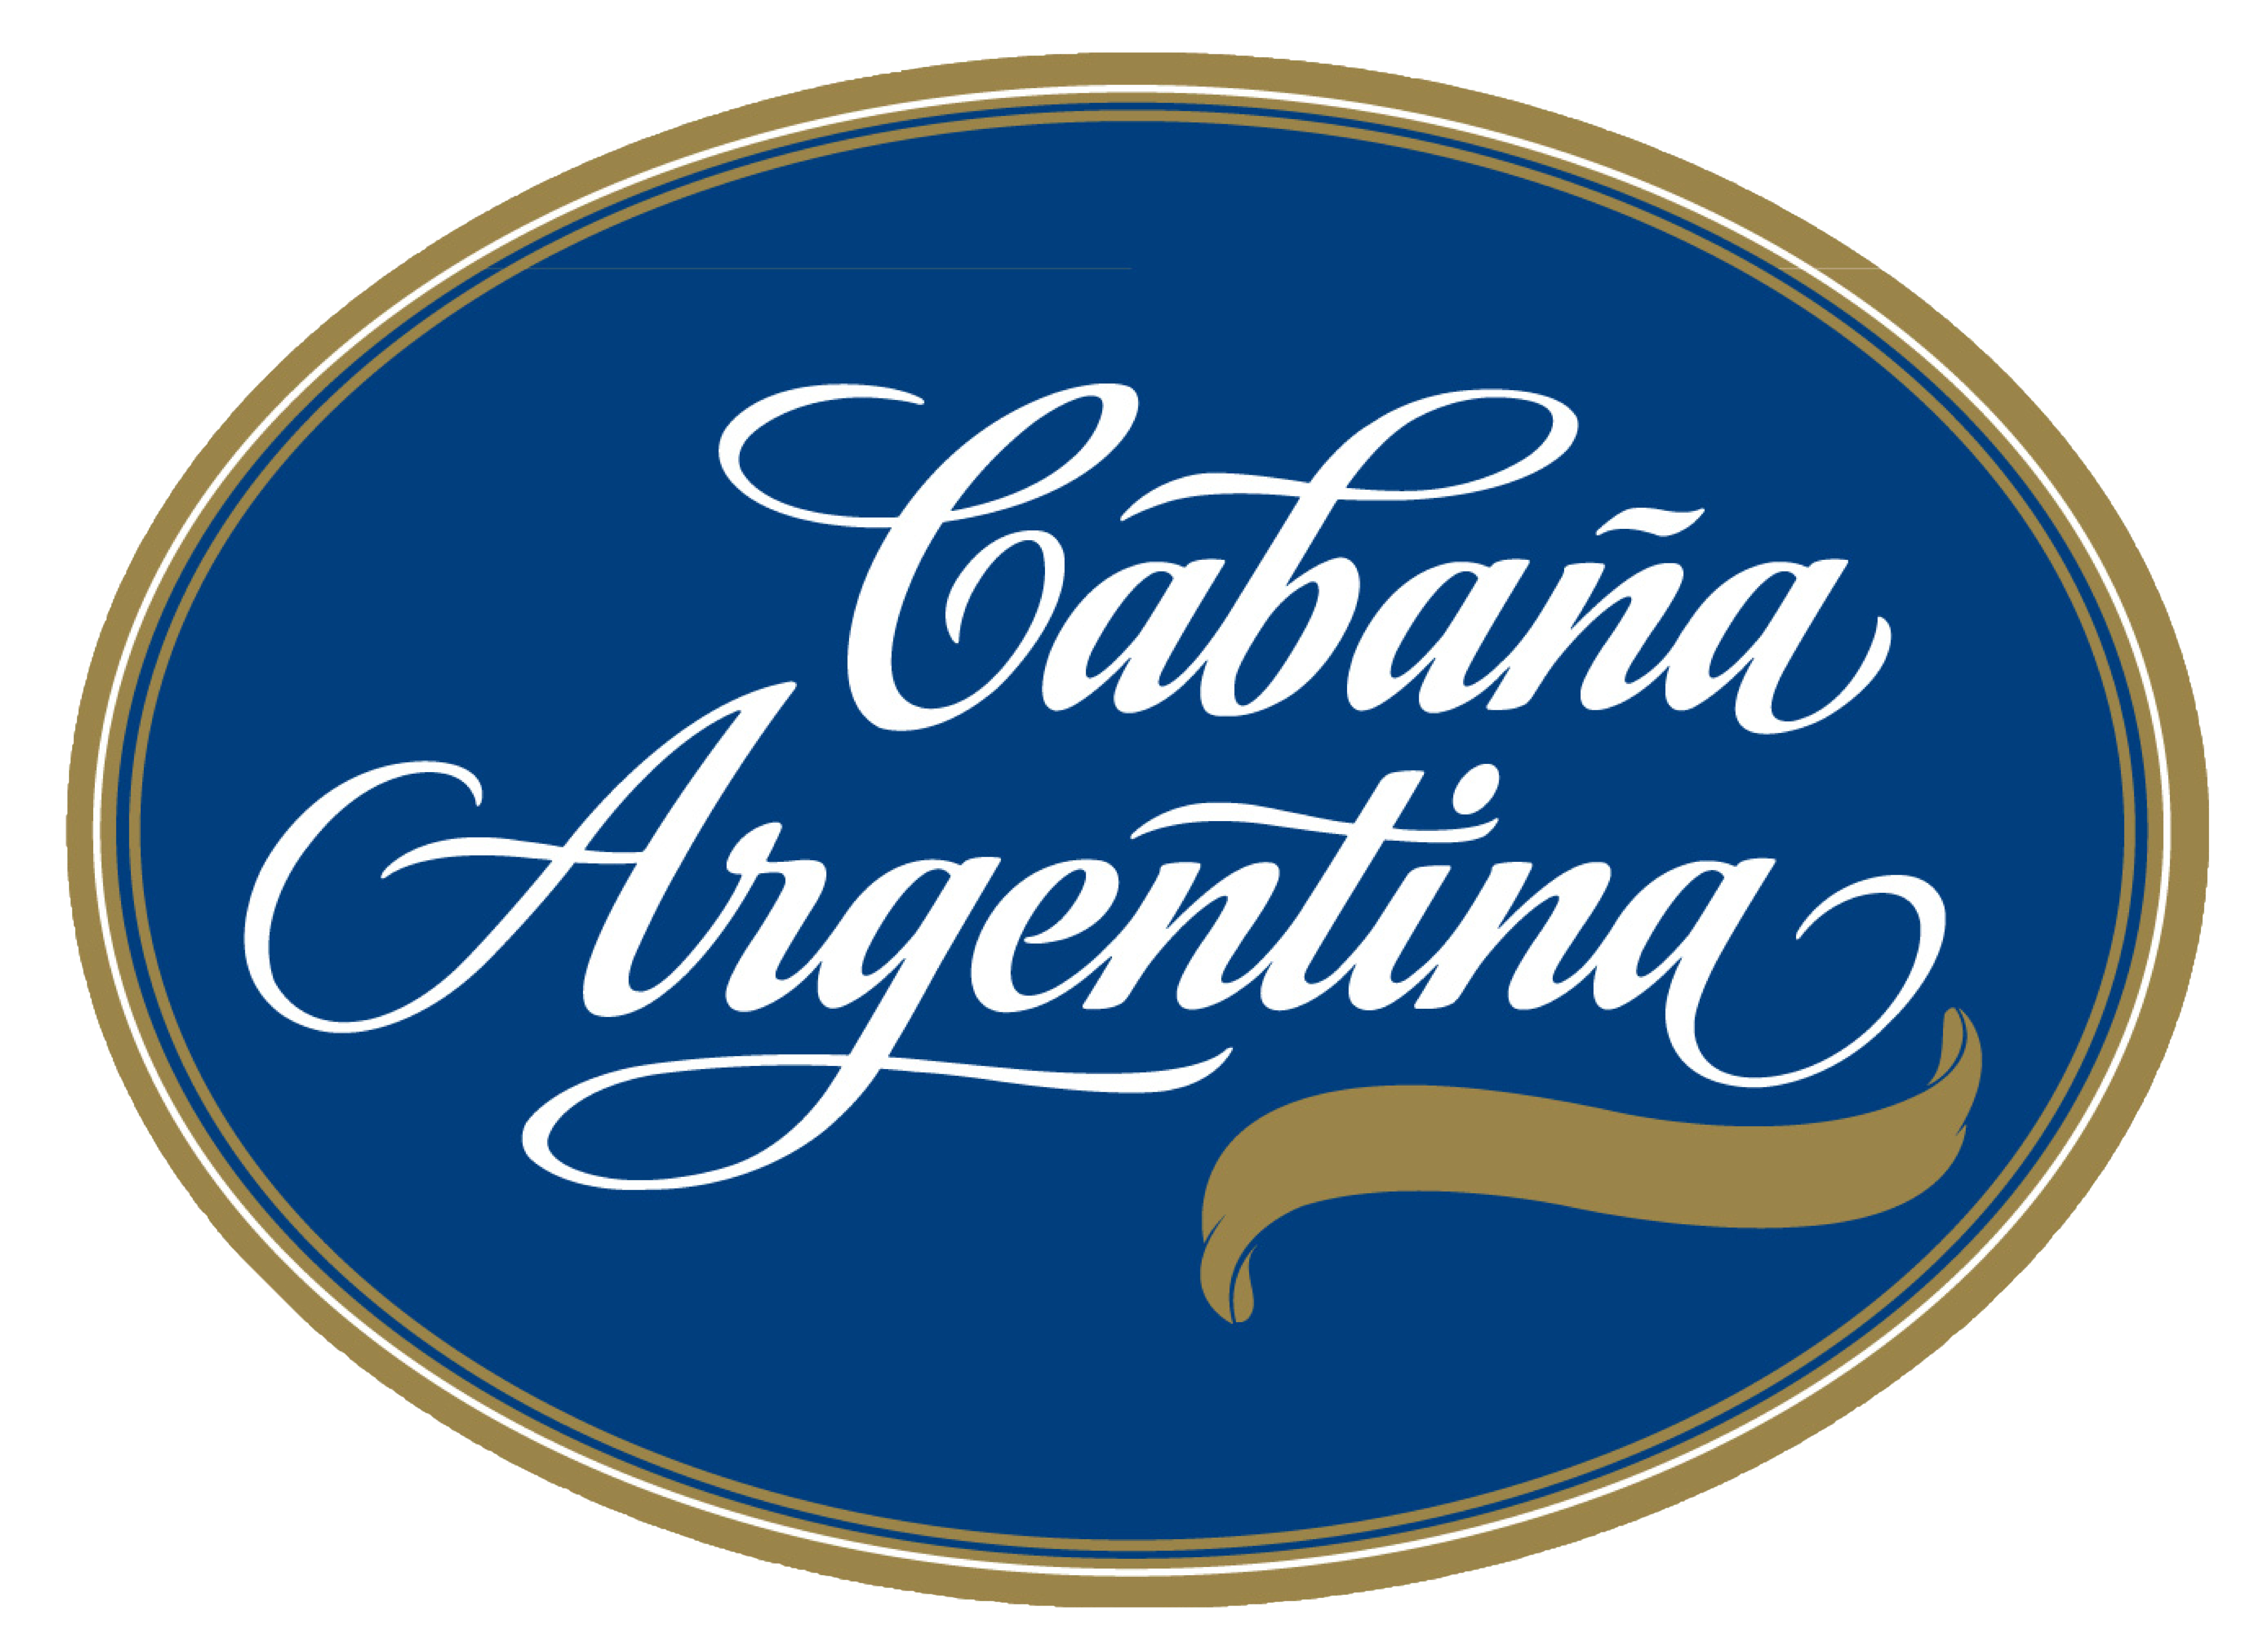 Cabaña Argentina